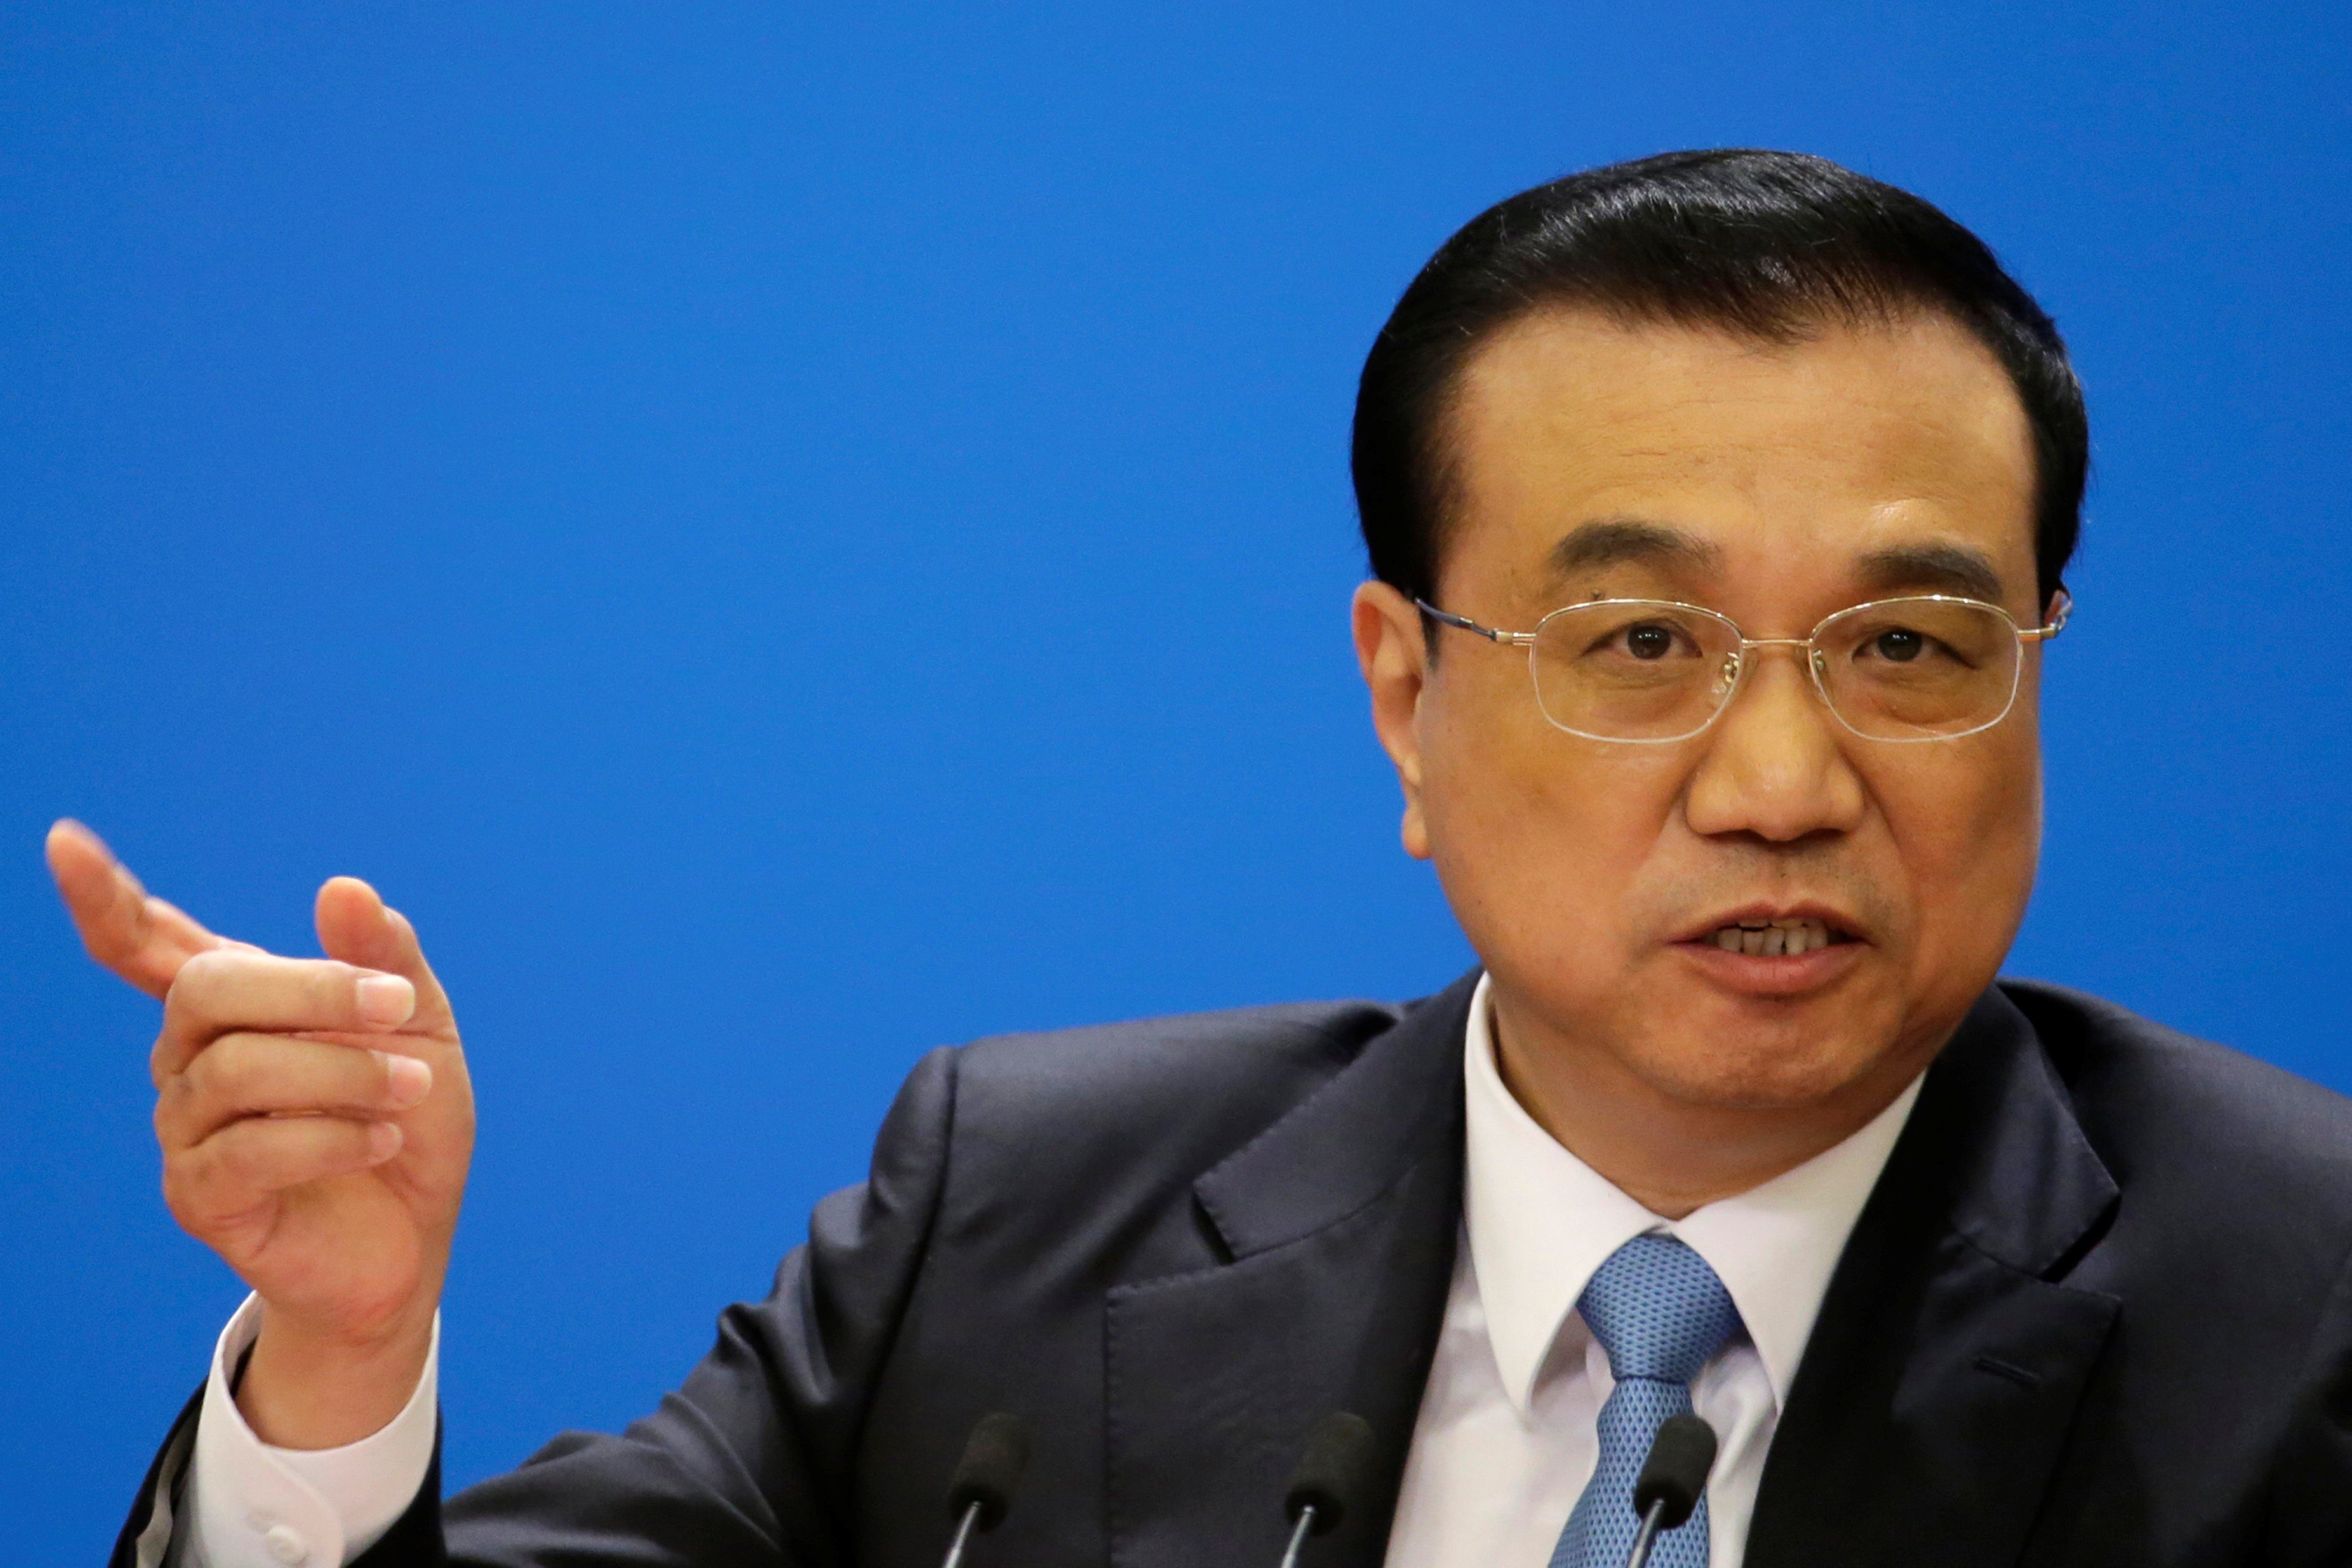 Premier Li Keqiang said China would protect intellectual property. Photo: Reuters